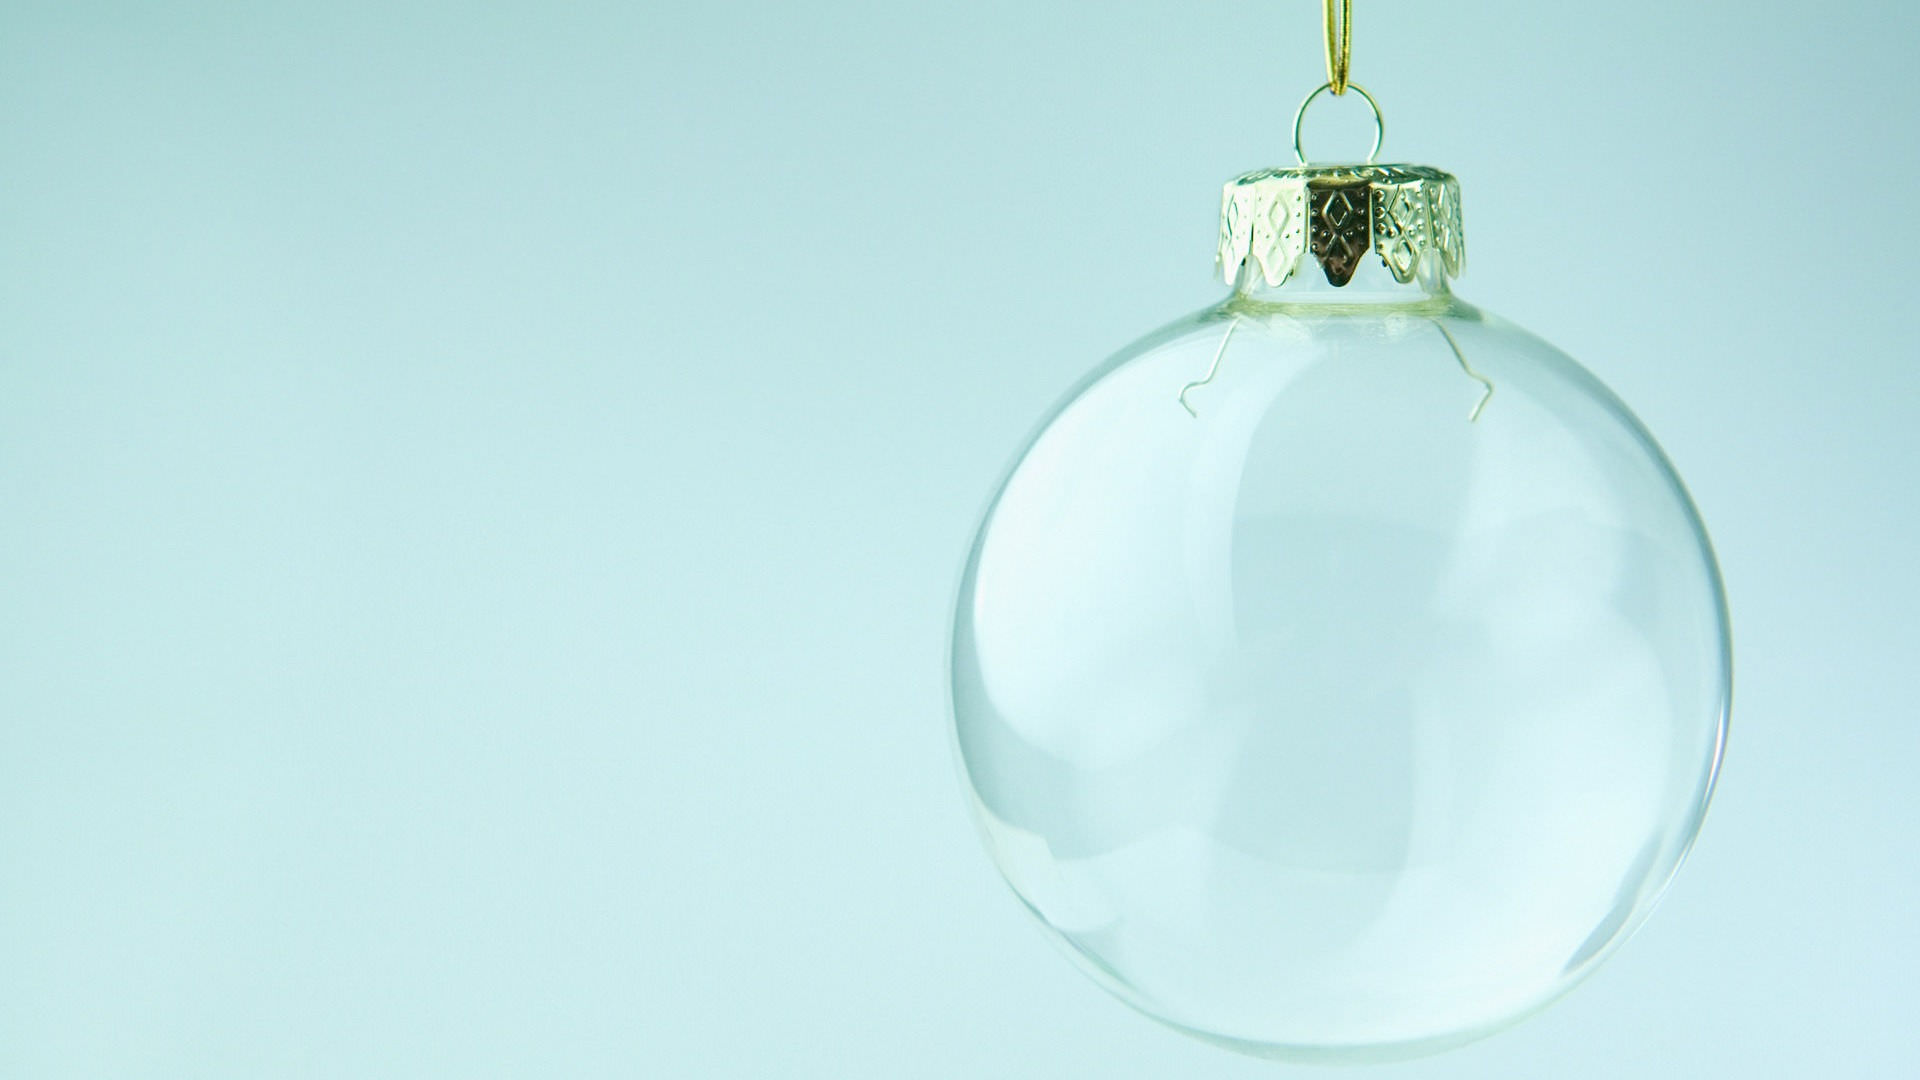 tapete transparentan,aqua,ornament,weihnachtsschmuck,glas,leuchte